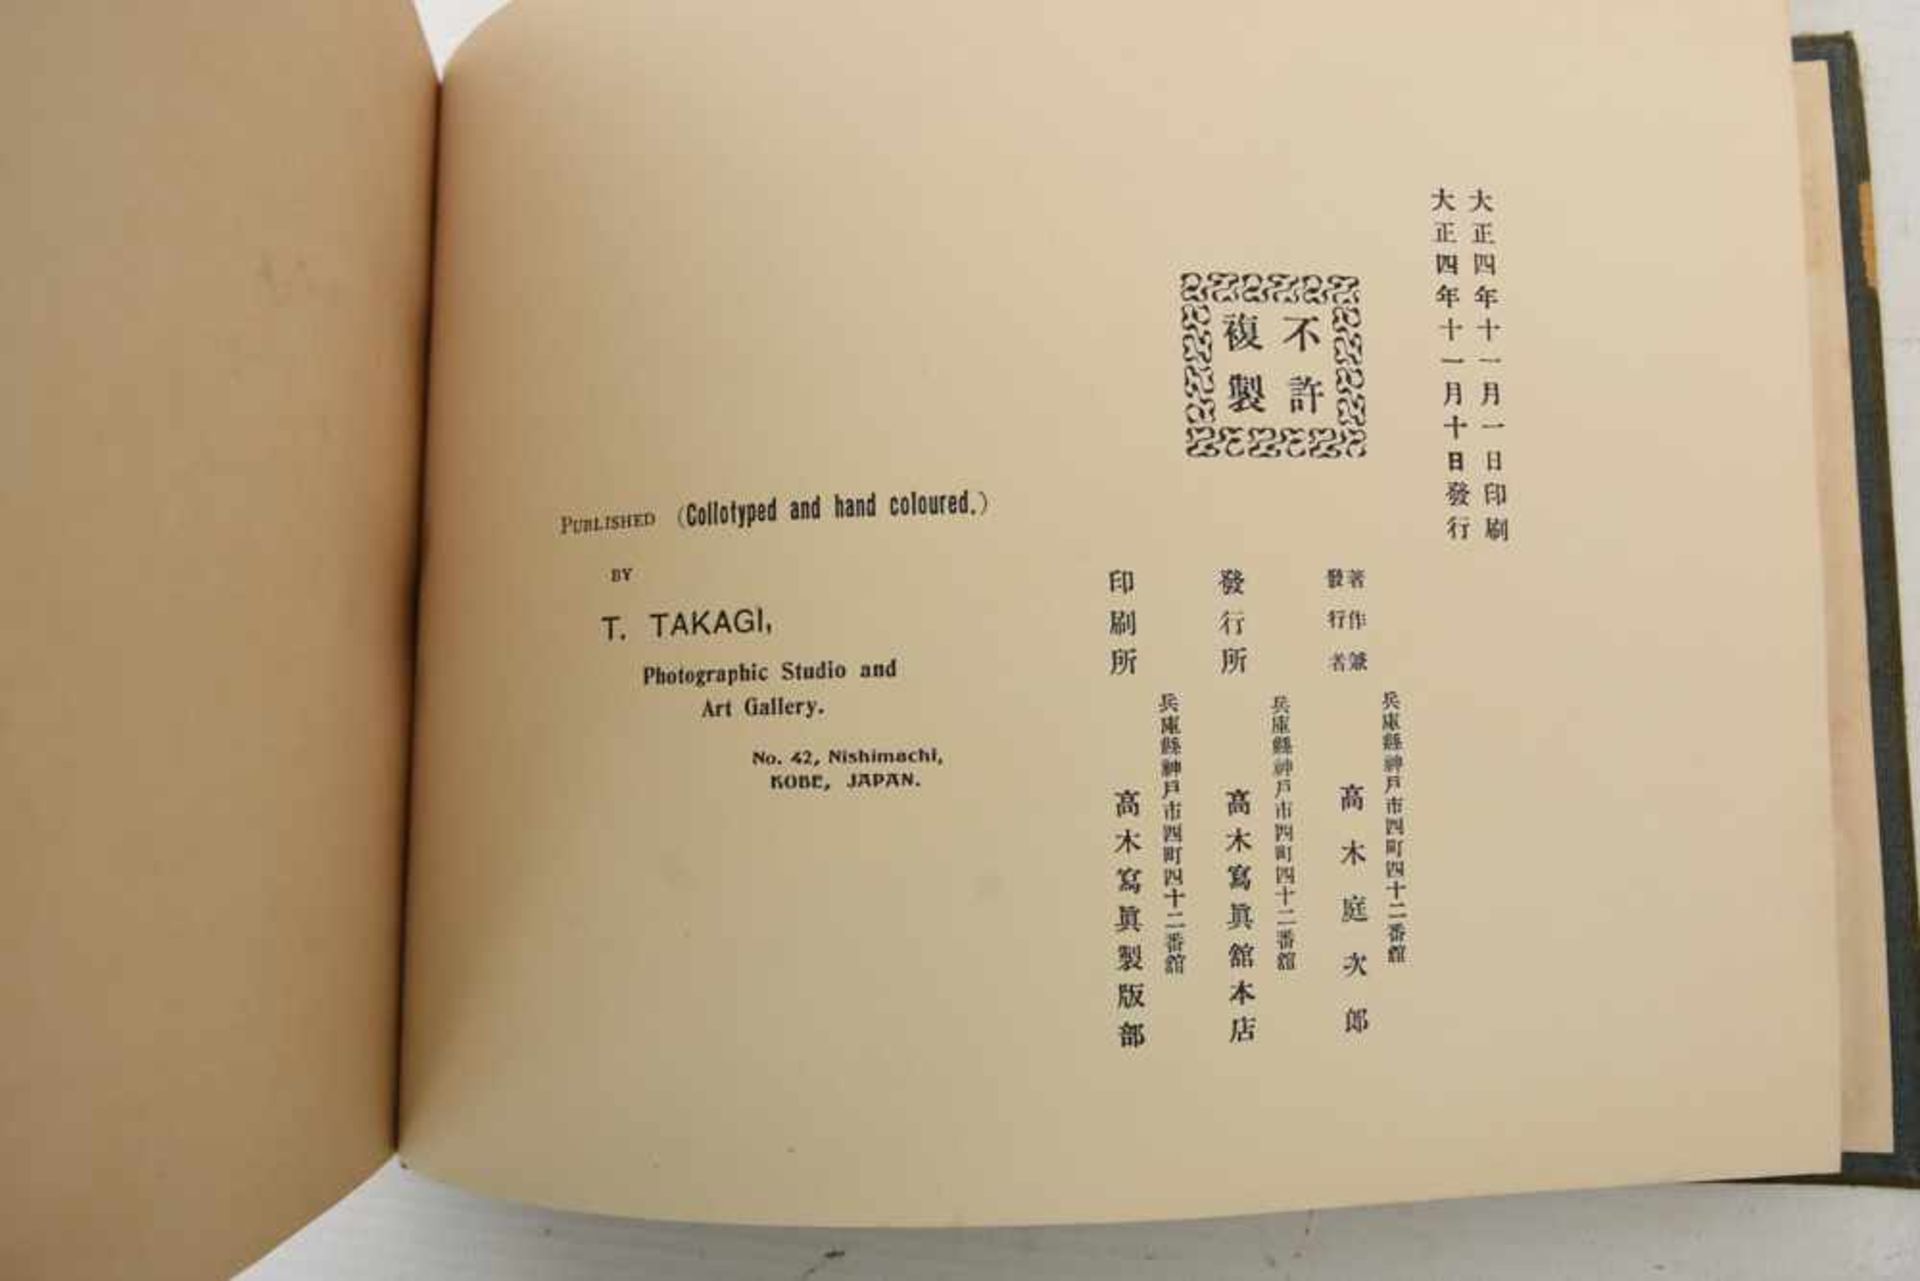 DREI BÜCHER, Krepp-,Seidenpapier, Japan 20.Jh."The Orges of Oyeyama" und "The Silk in Japan" auf - Image 9 of 9